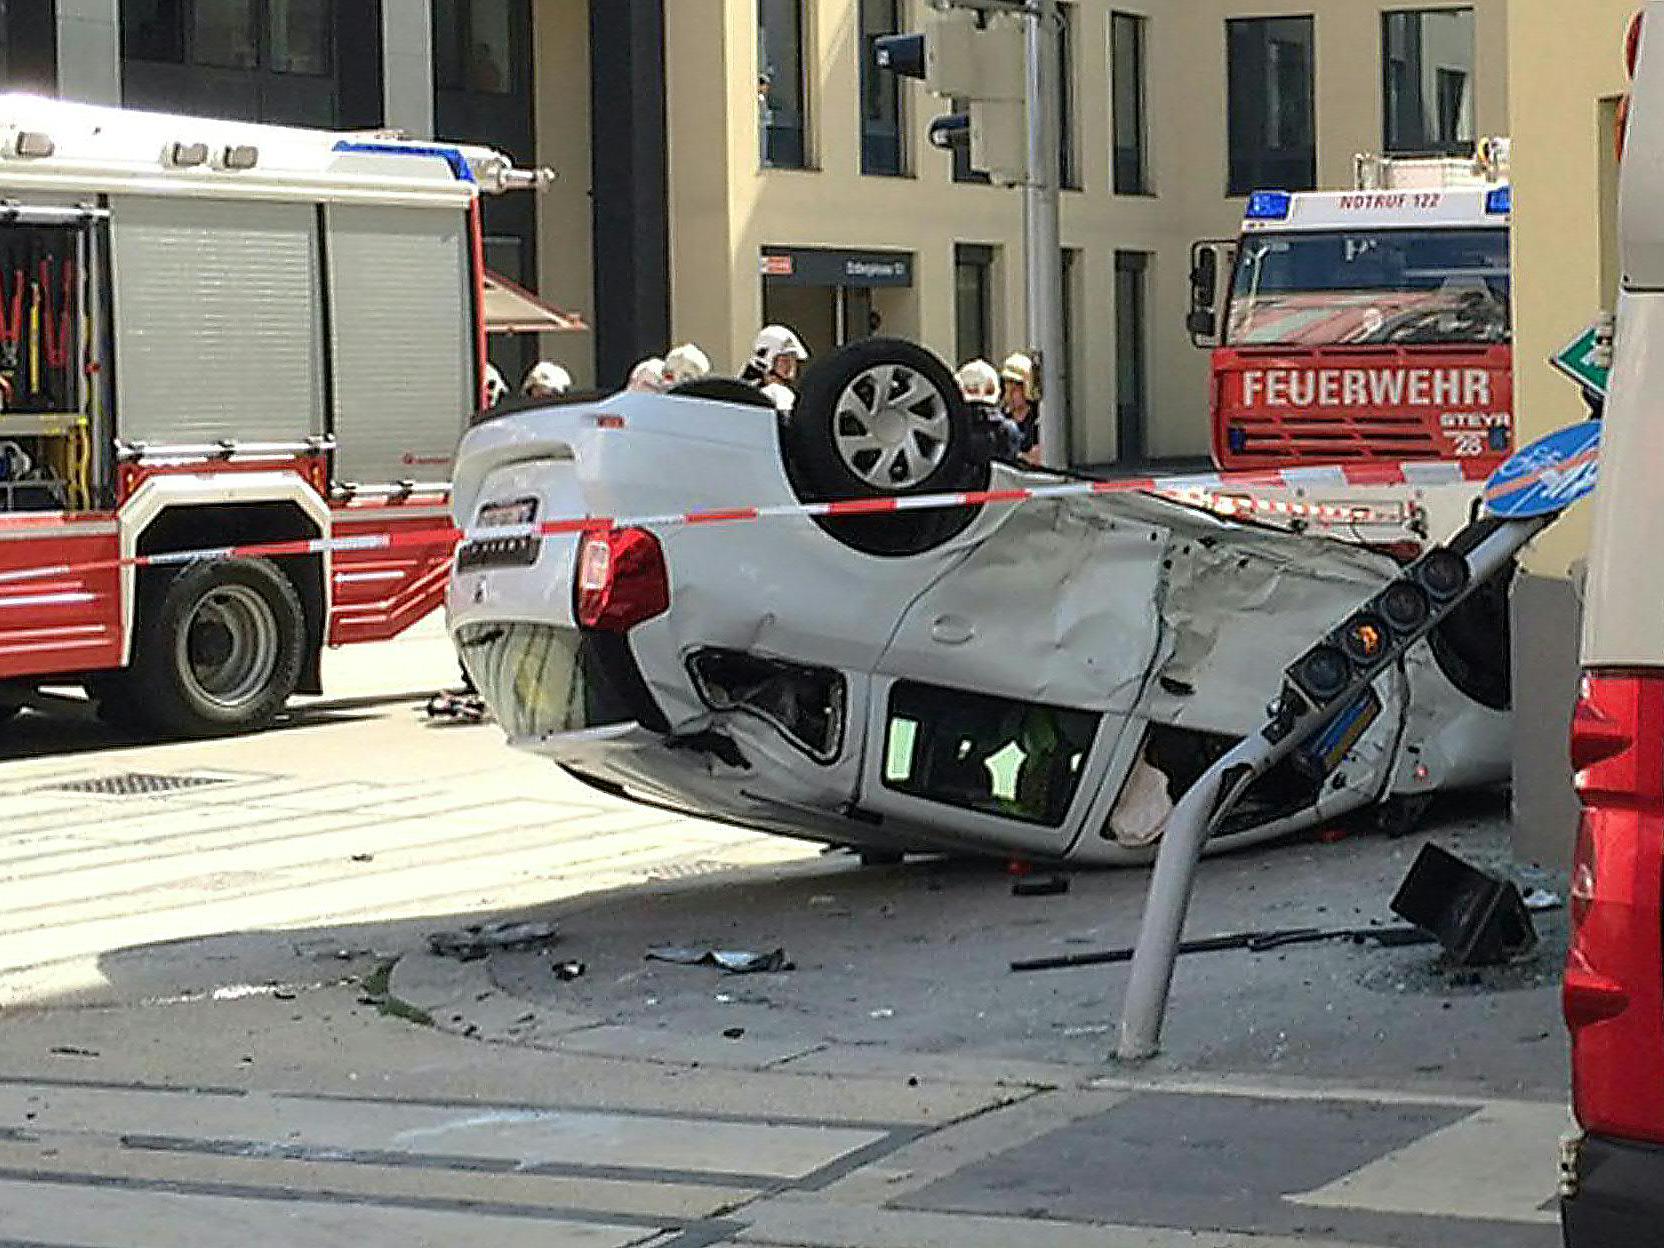 Fahrzeug überschlug sich bei Unfall in Wien - Drei Leichtverletzte